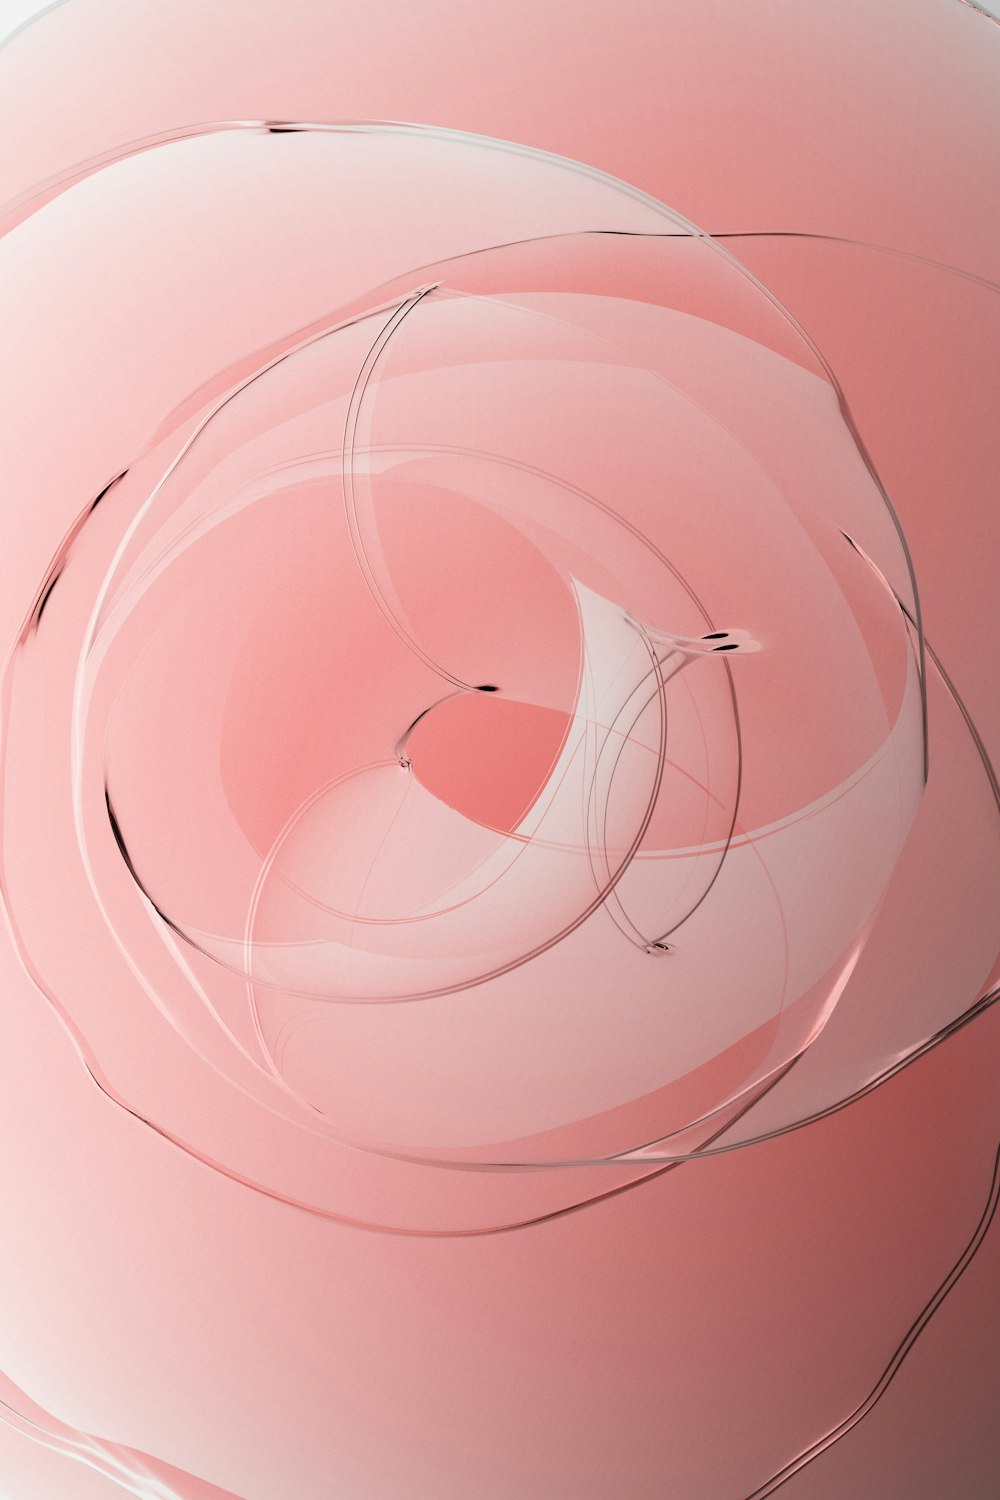 uma imagem gerada por computador de um objeto circular